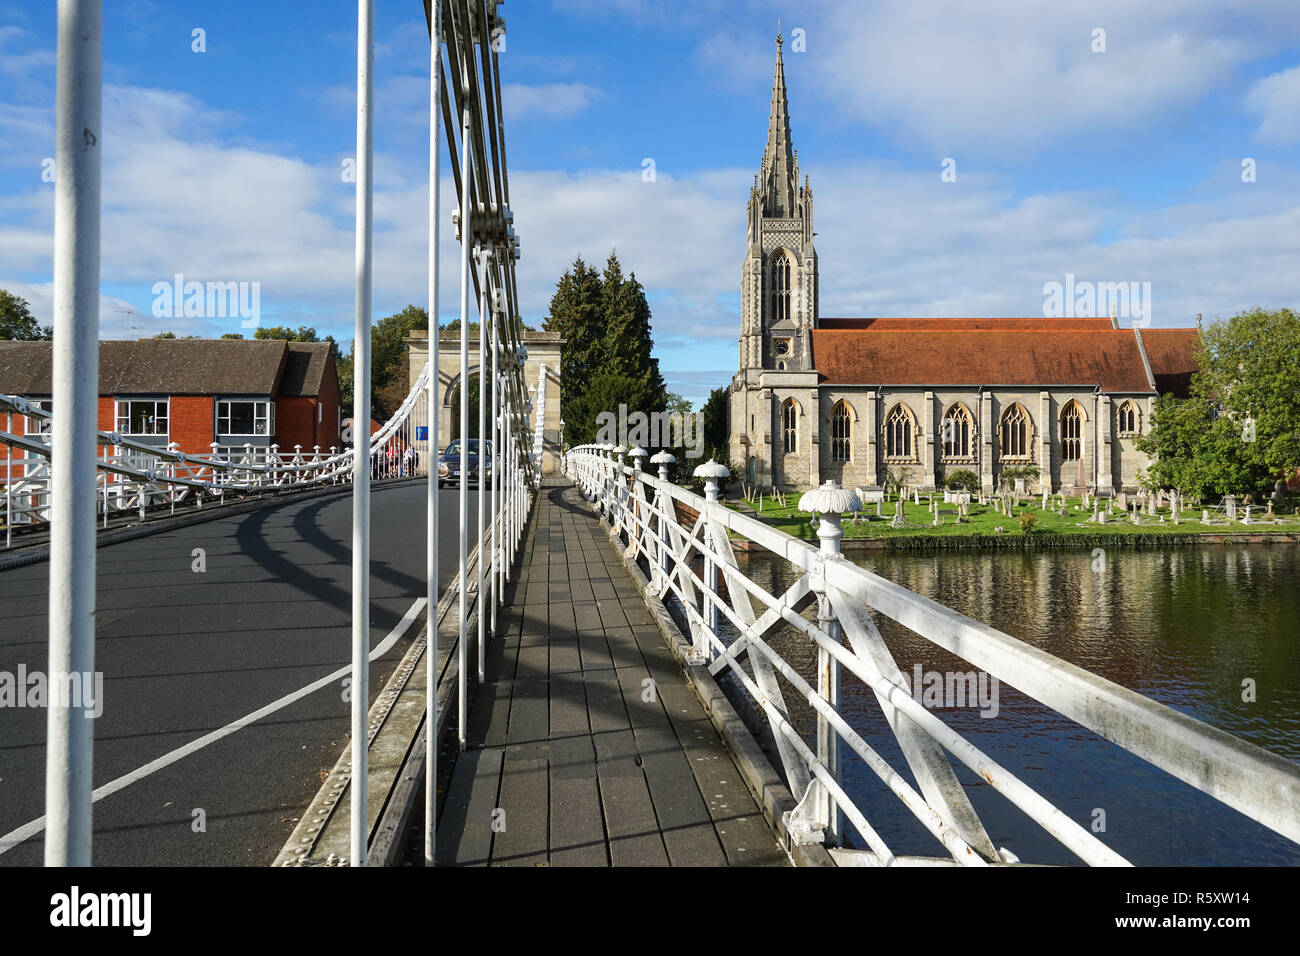 L'église All Saints de Marlow suspension bridge, Buckinghamshire, Angleterre Royaume-Uni UK Banque D'Images